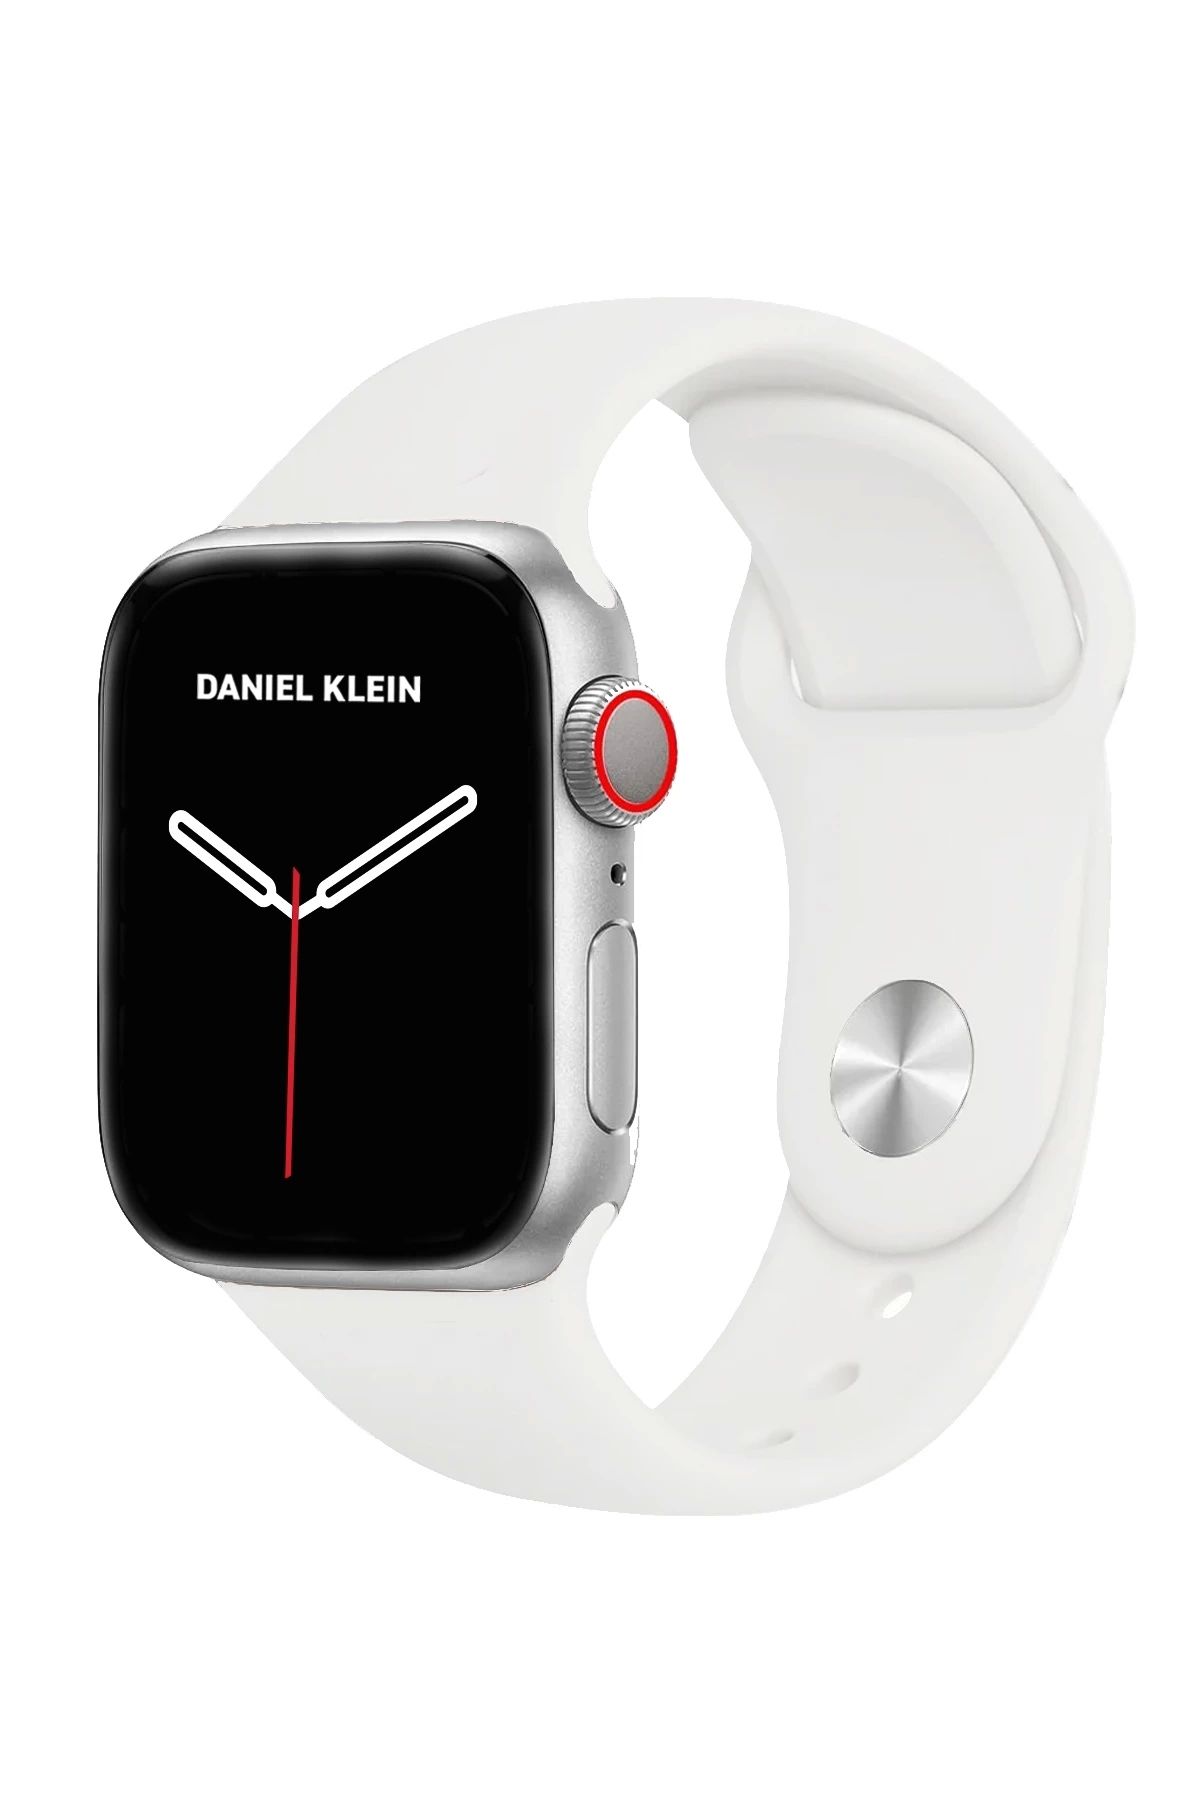 Daniel Klein Smart Watch Sesli Görüşme Özellikli Akıllı Saat Dks8-01 Gümüş-beyaz